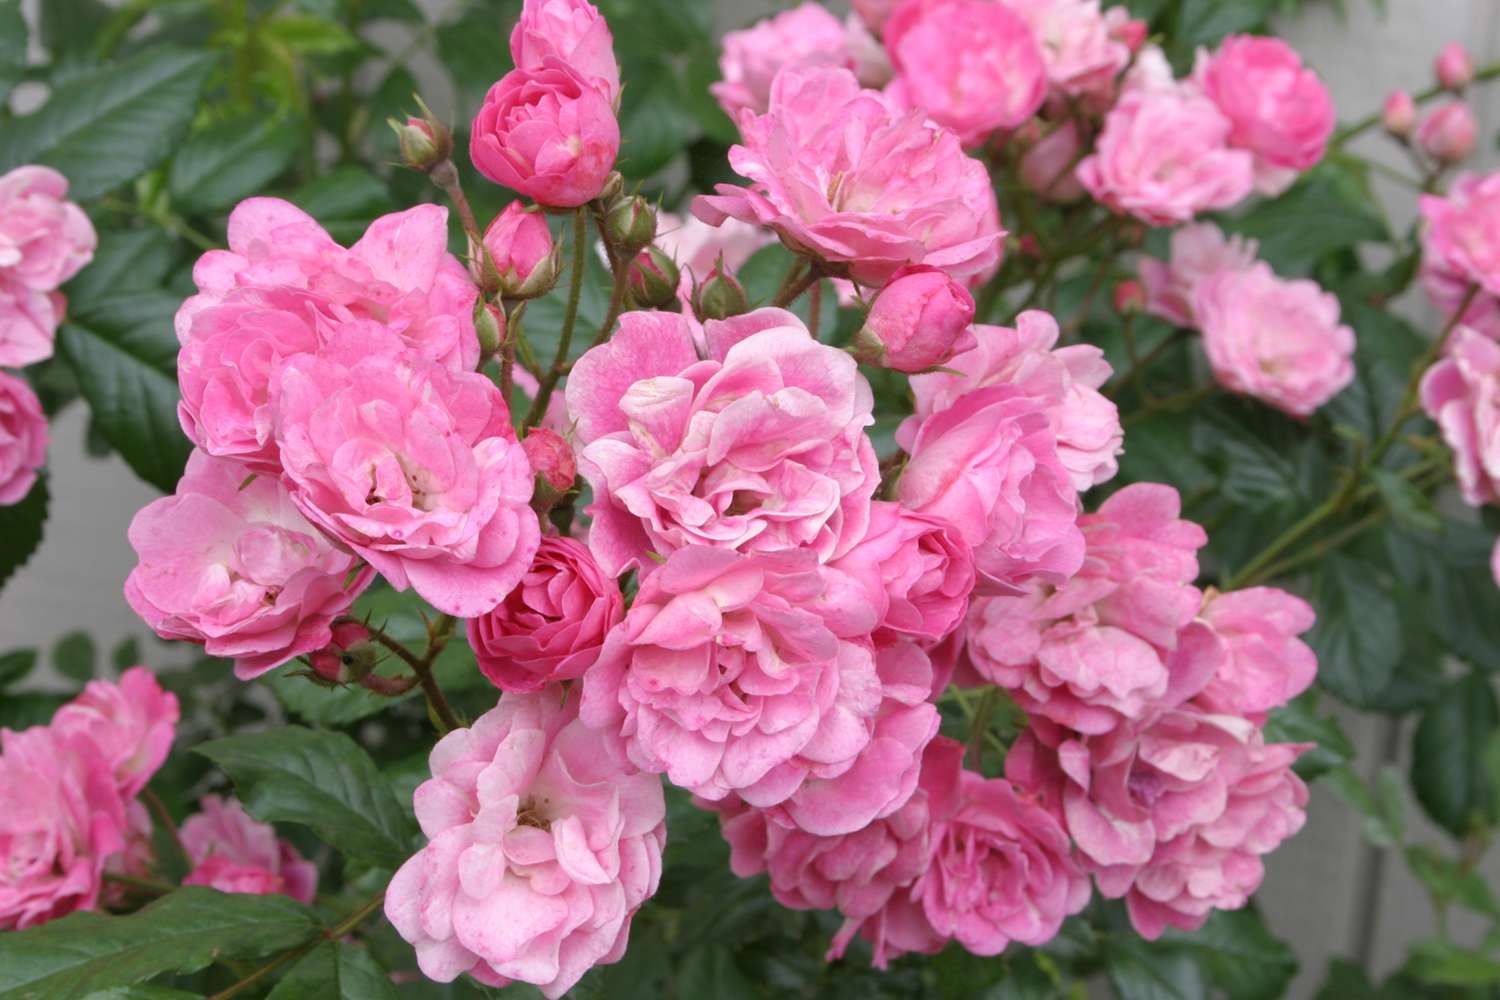 'China Doll' pink roses